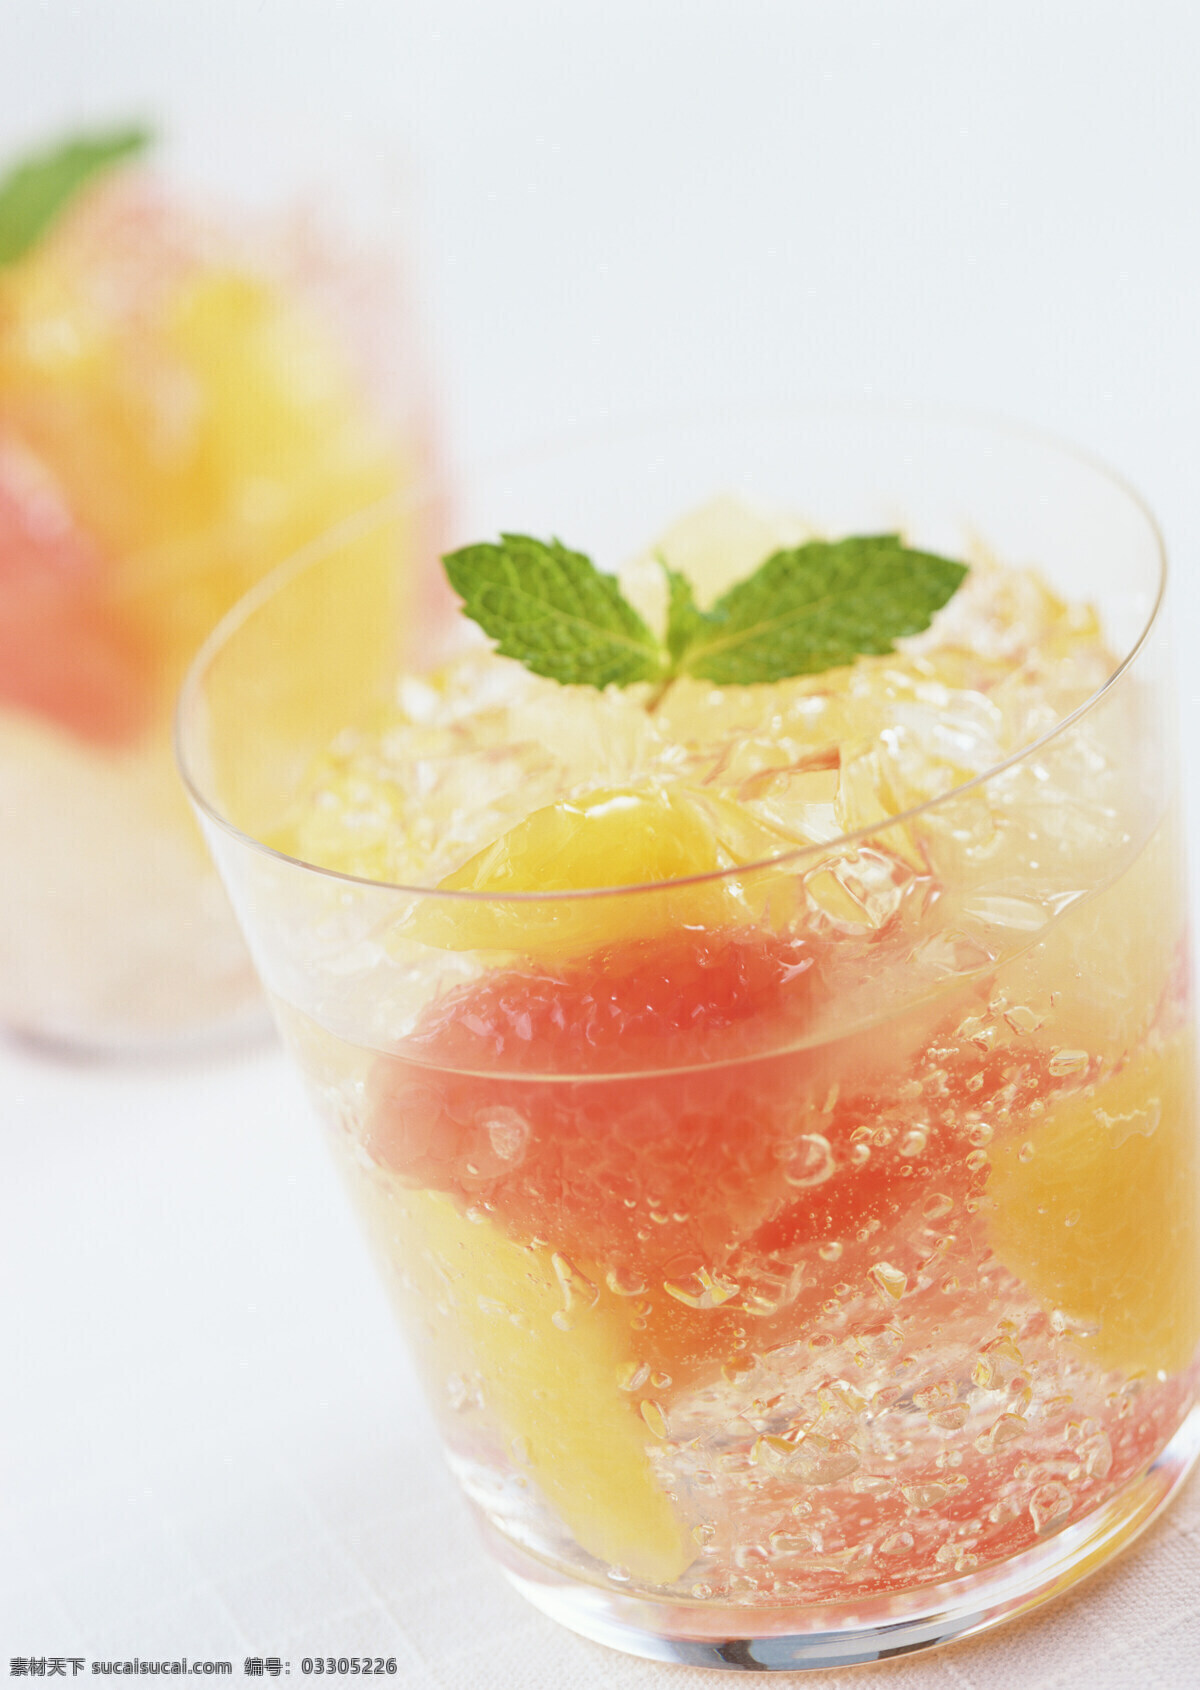 高清图片 水果杯 草莓 饮品 饮料 果汁 橘子 甜点 甜品 餐饮美食